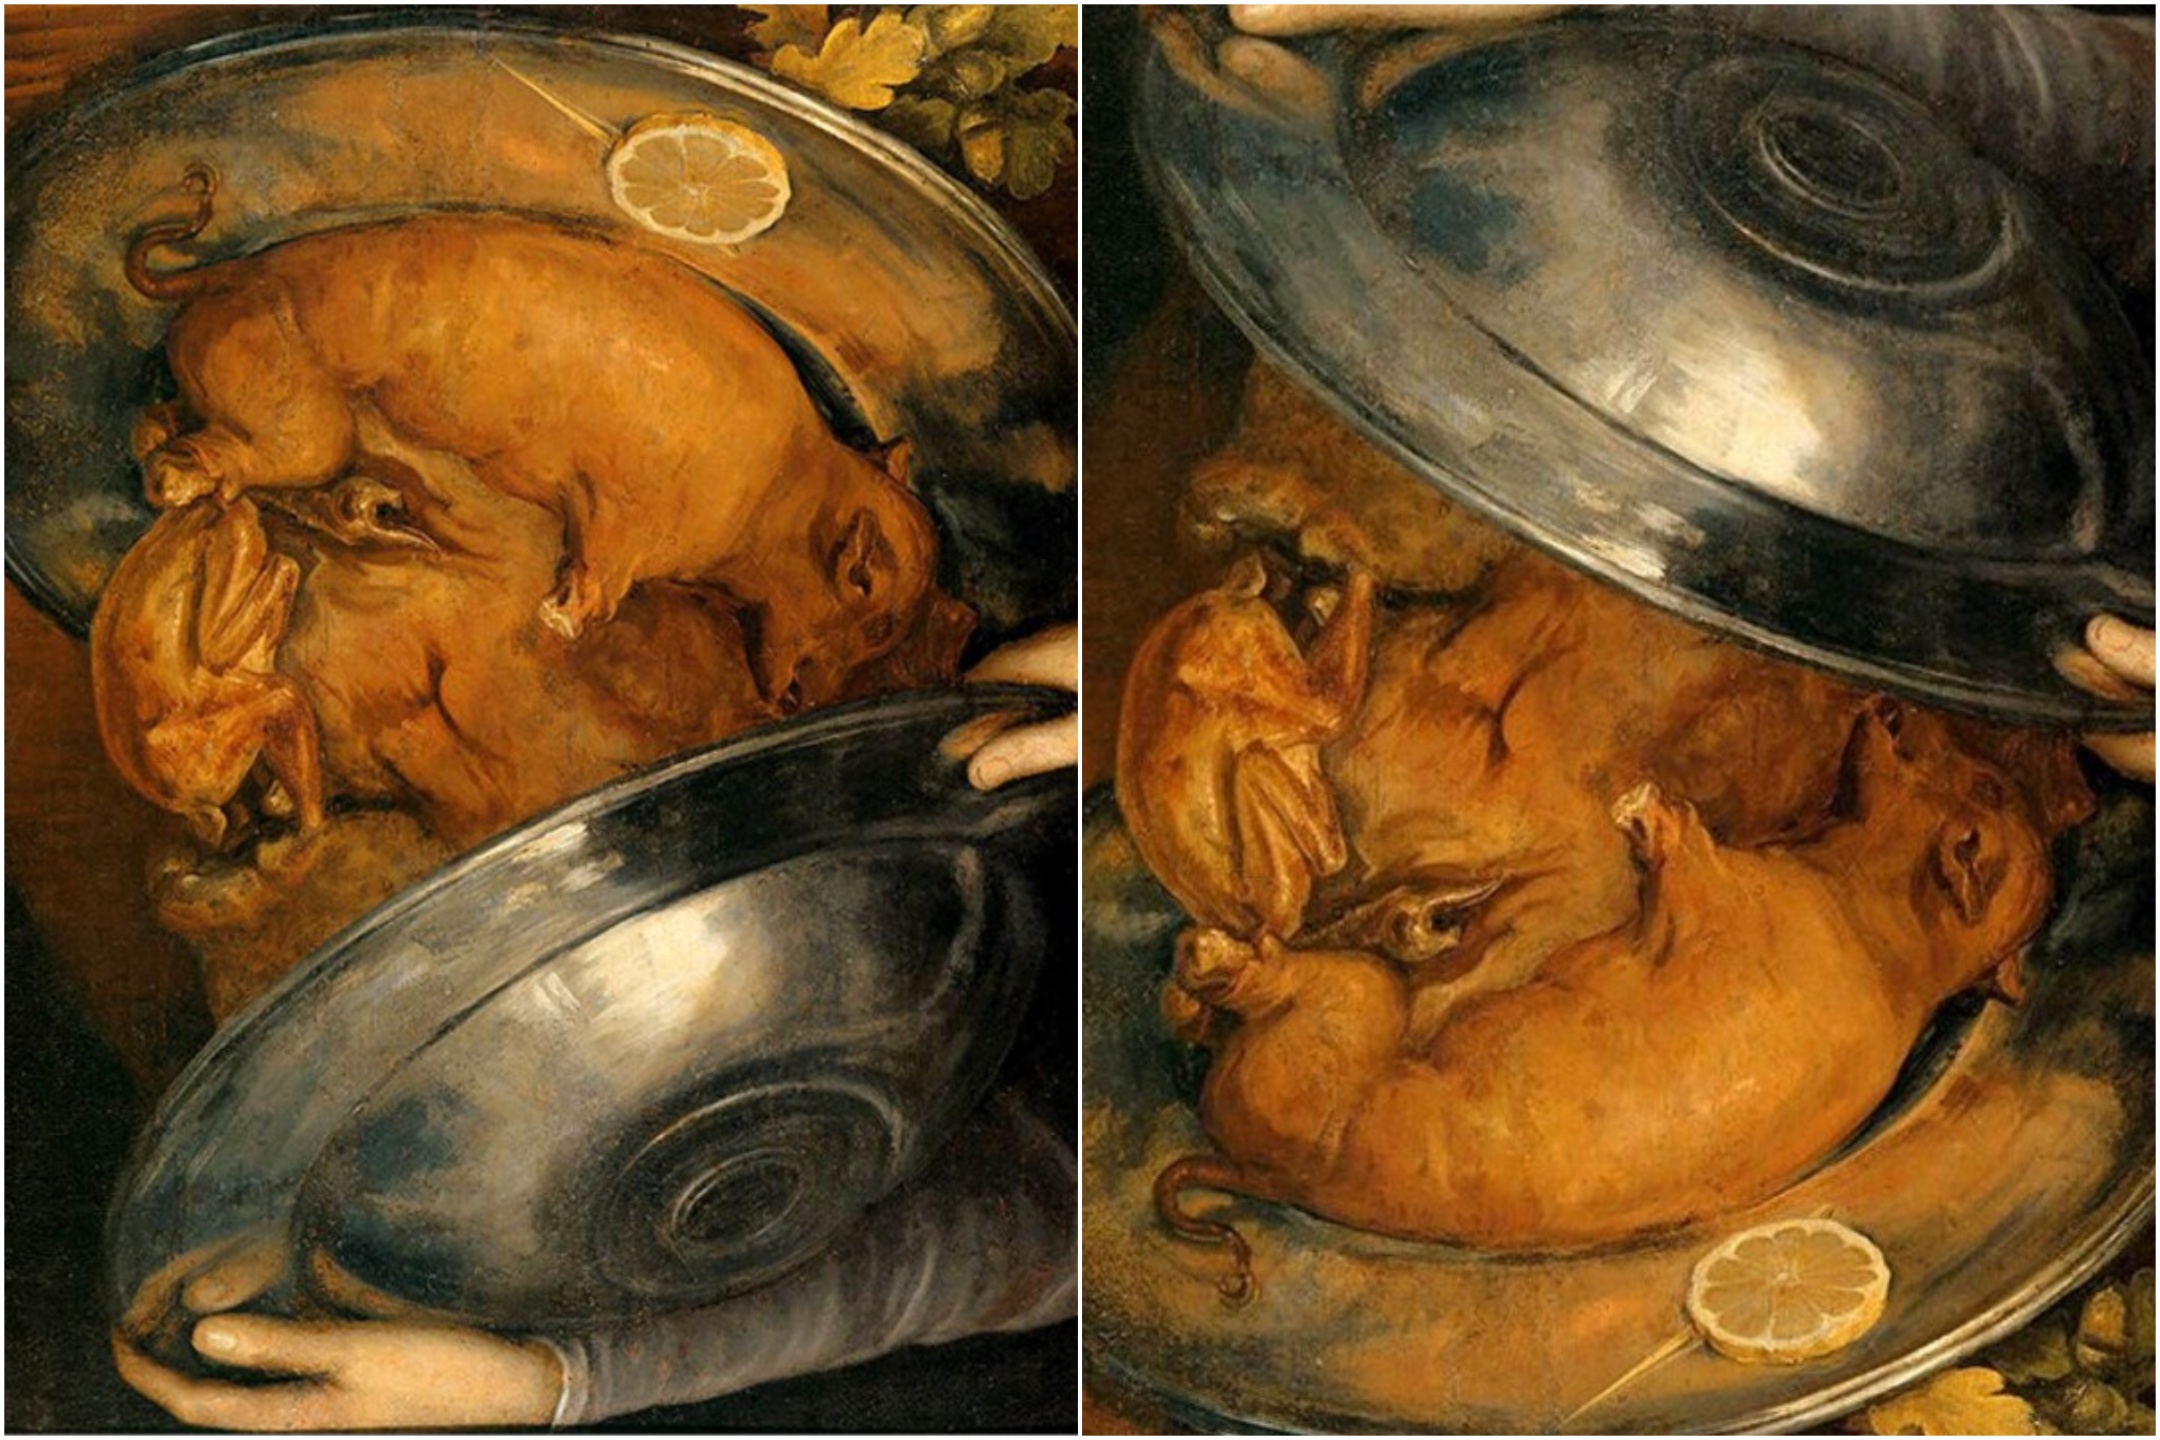 arcimboldo, un pintor surrealista del siglo xvi